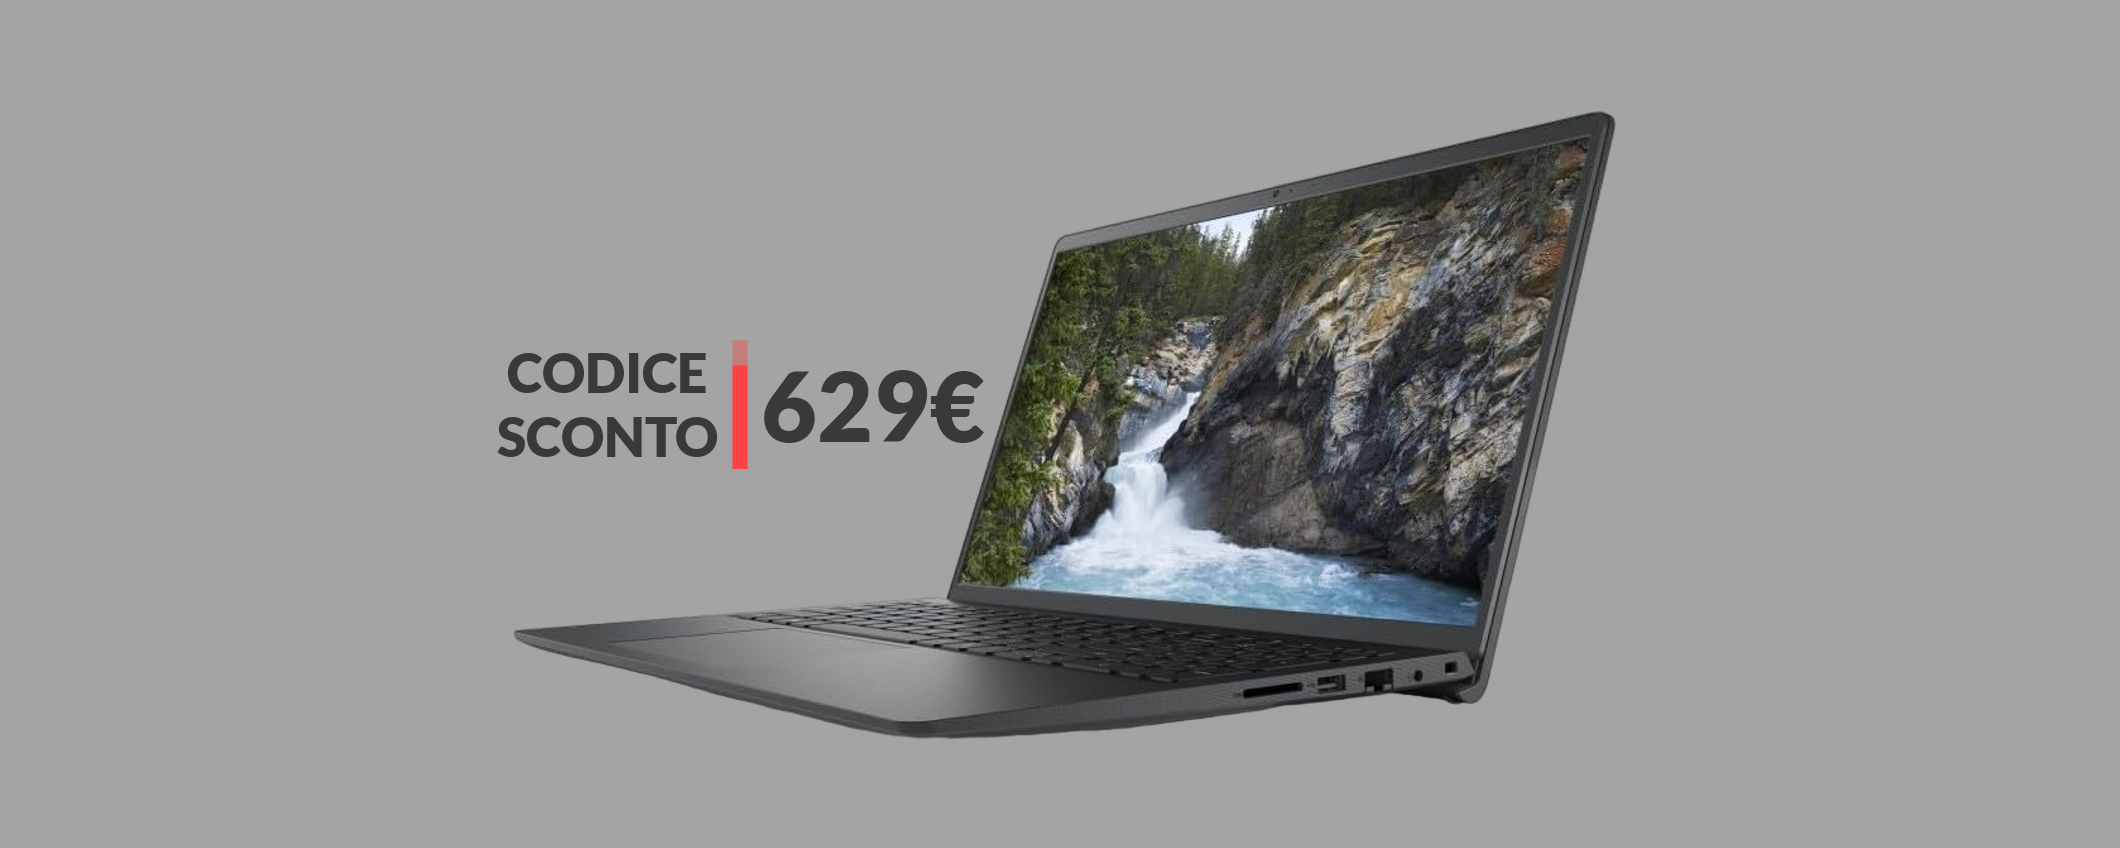 Notebook Dell con processore i7: potenza smisurata a soli 629€